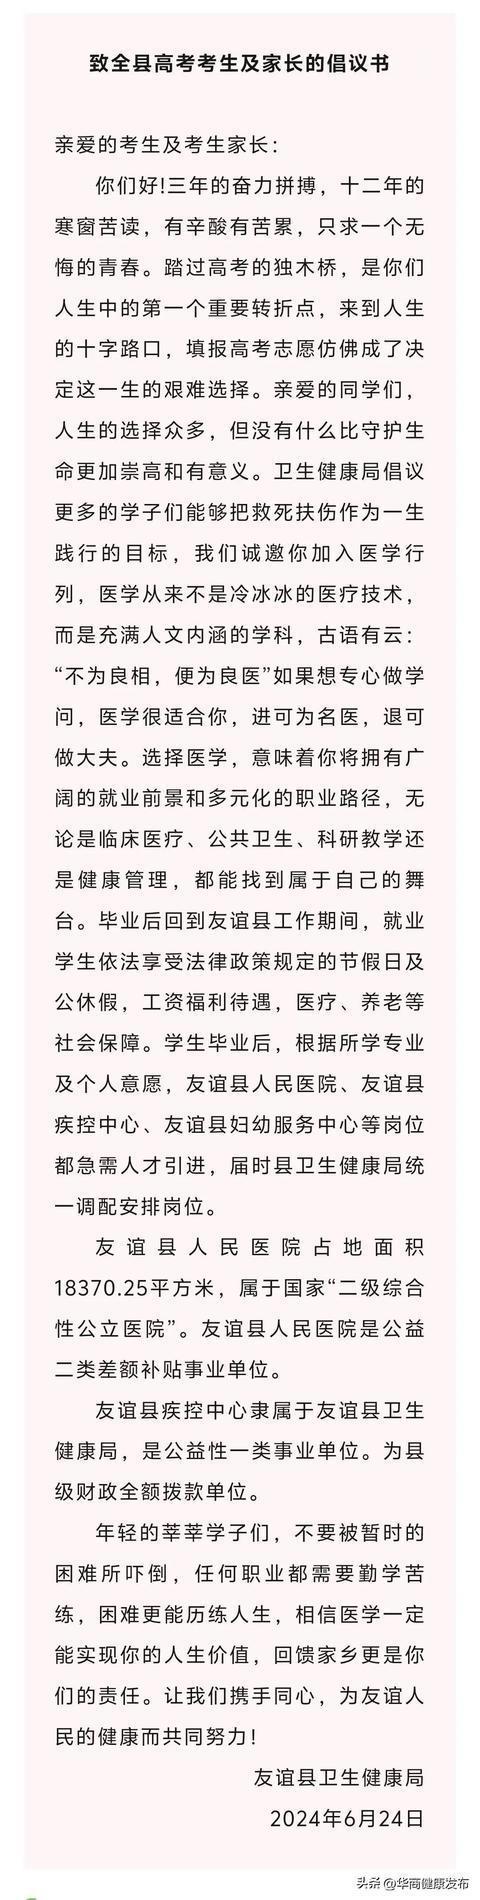 黑龙江一县倡议考生学医承诺安排岗位 破解基层医疗人才困境